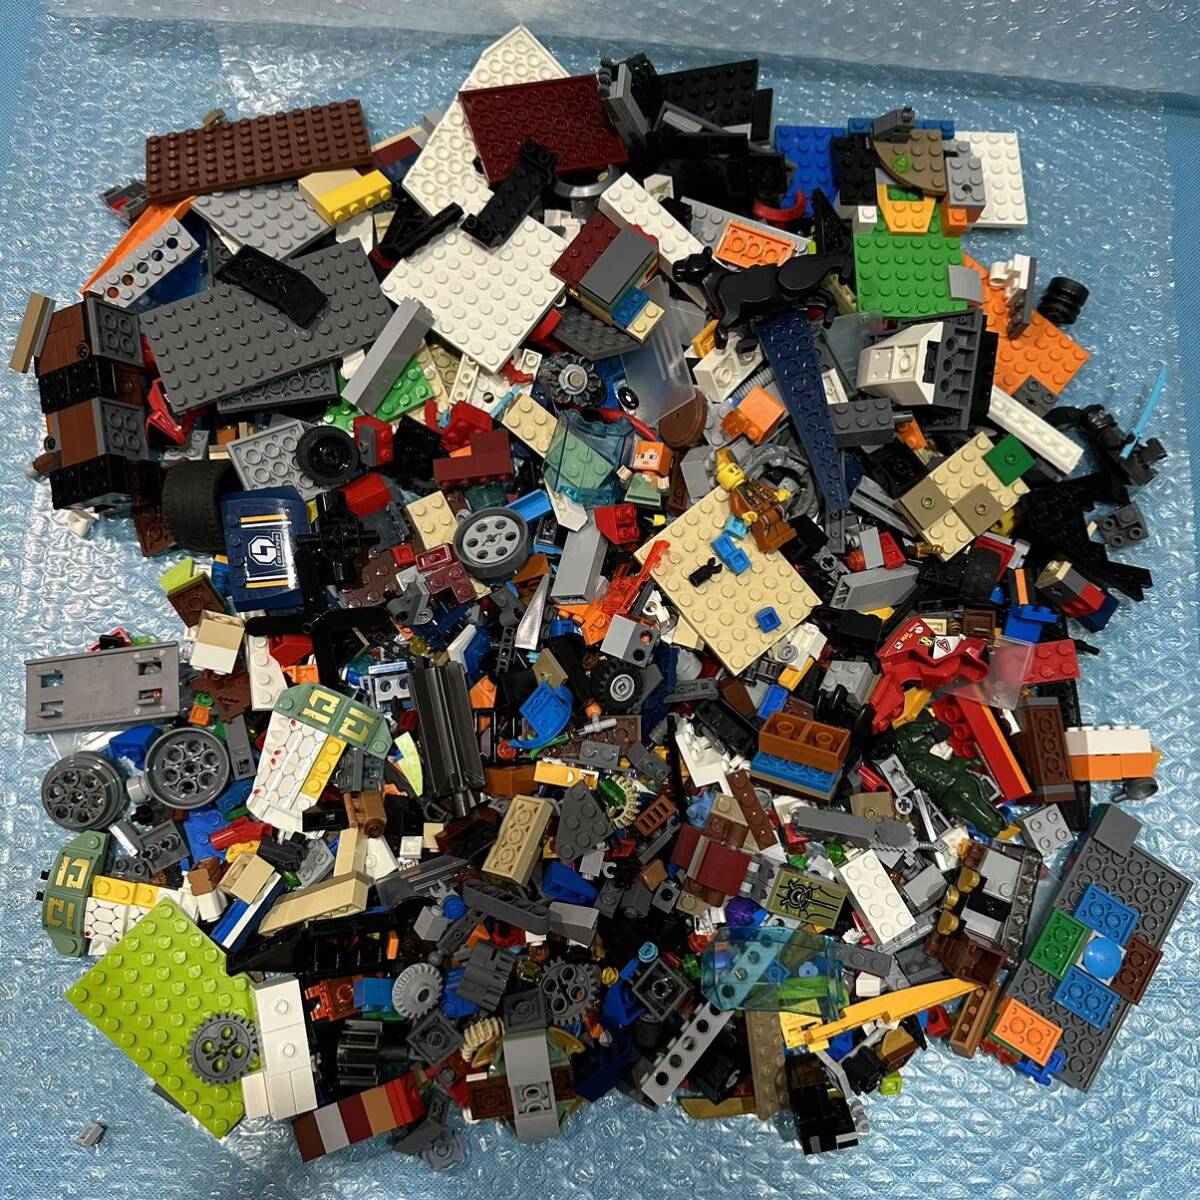 LEGO Lego блок много продажа комплектом примерно 1.5kg транспортное средство блок детали основа доска мой n craft fig и т.п. различный (11)80